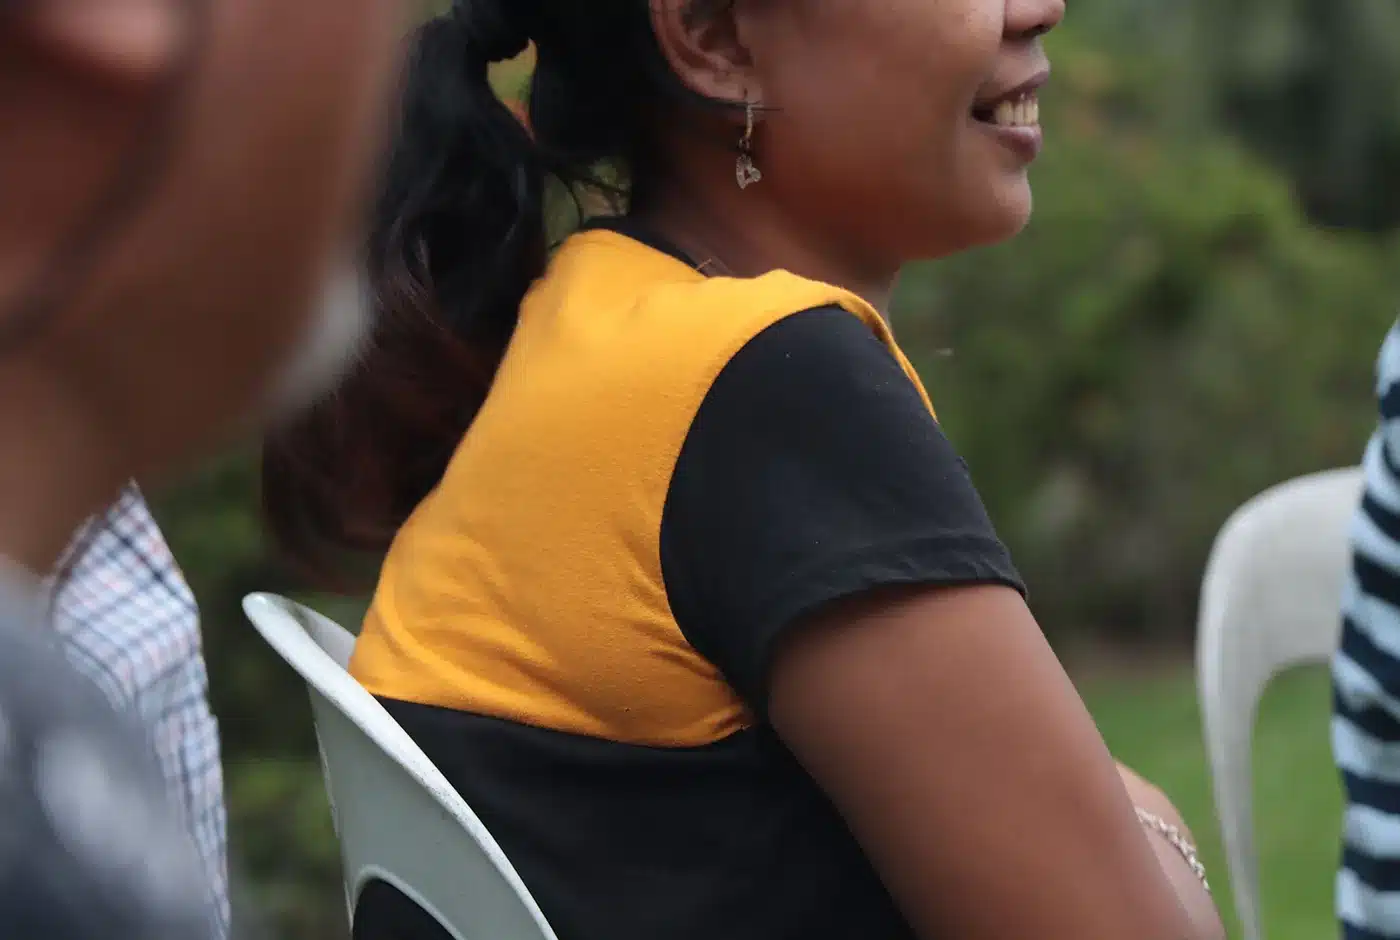 El sorprendente nacimiento de una nueva hermana en Filipinas